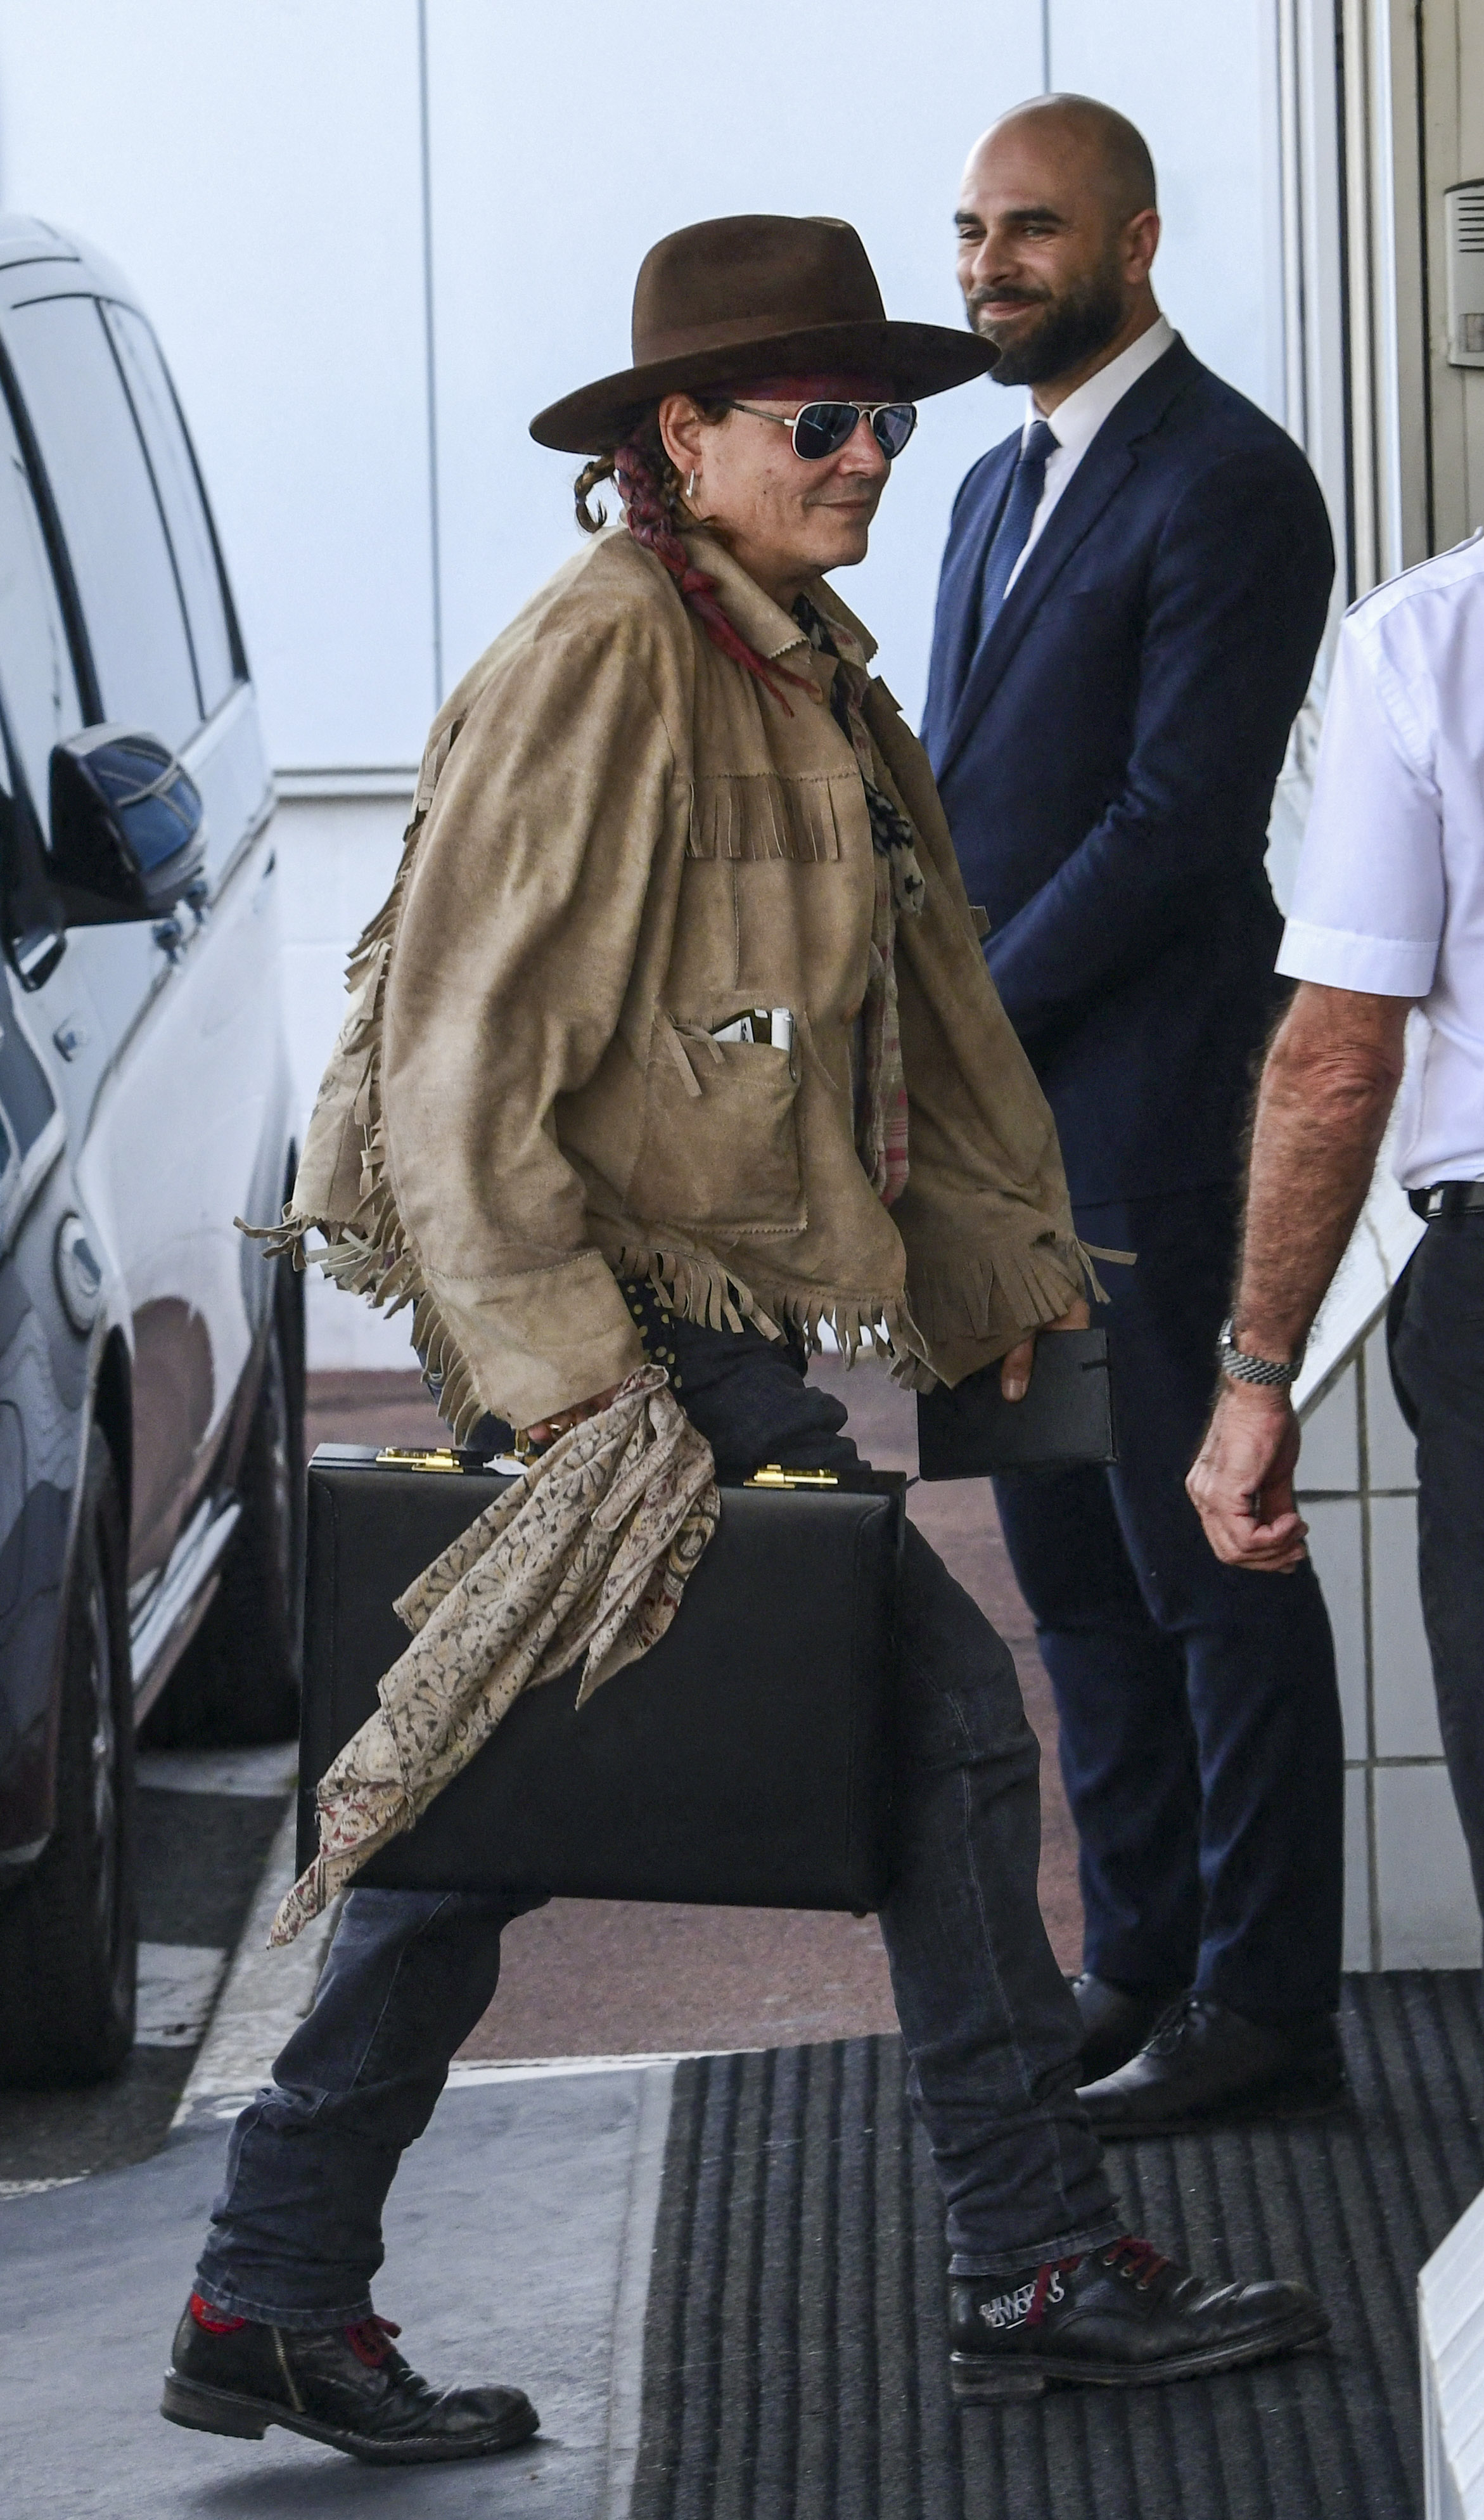 Johnny Depp viajó a París para rodar una nueva película, bajo la dirección de la actriz francesa Maiwenn. Antes de comenzar su trabajo en el set, el actor realizó prueba de vestuario, pelucas y maquillaje